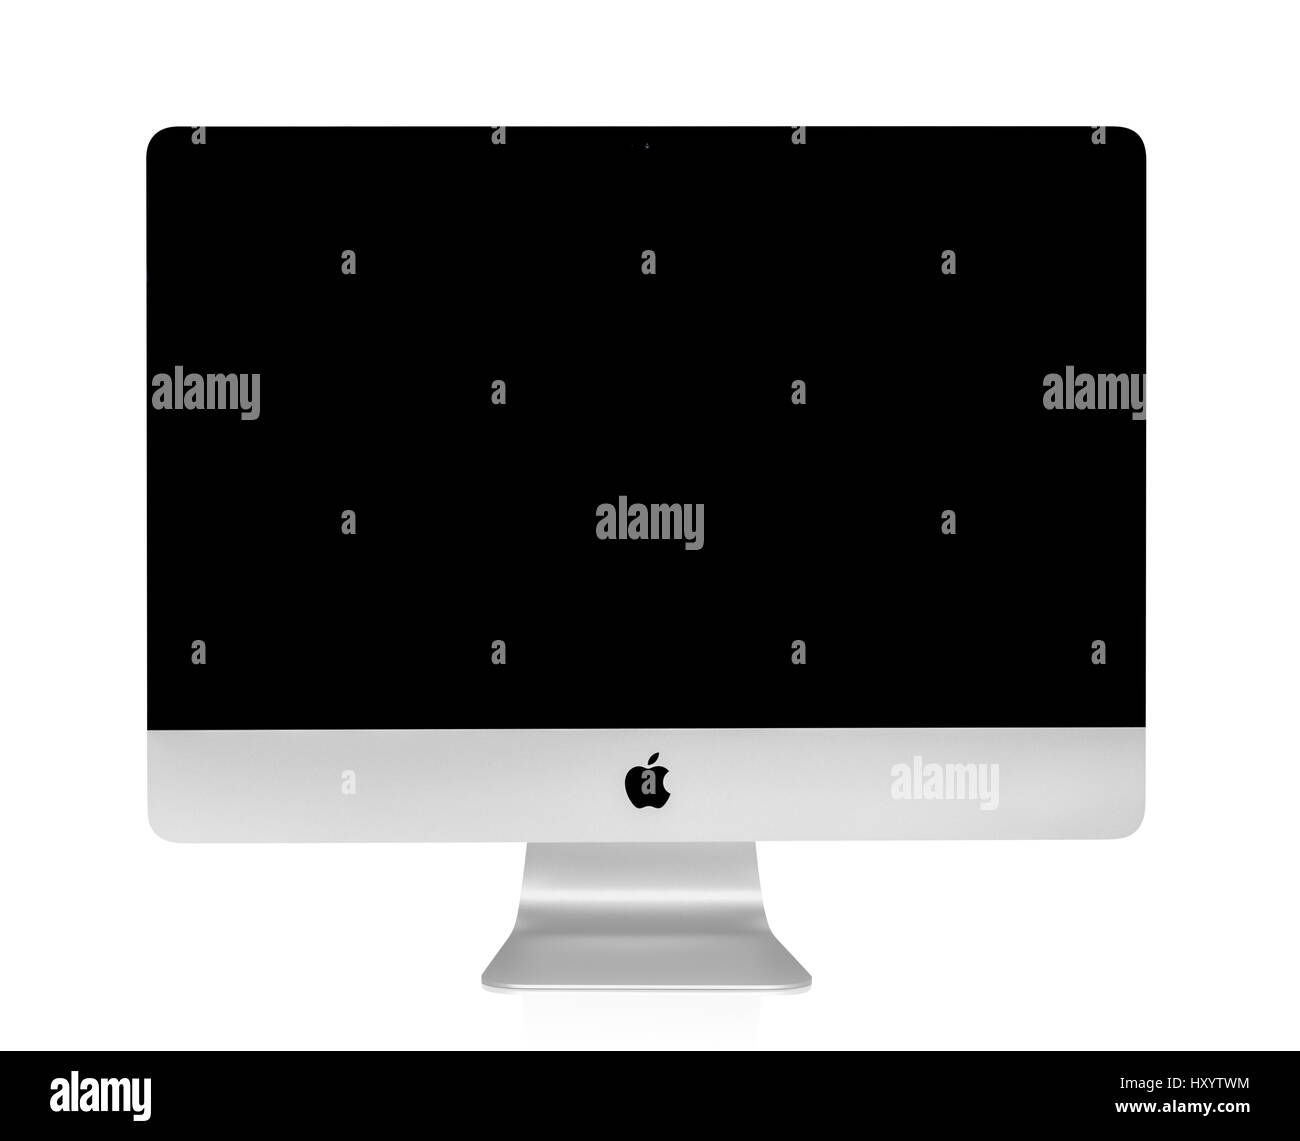 BANGKOK, THAILAND - 14. August 2015: Foto des neuen iMac 21.5 mit OS X Yosemite. iMac - Monoblock Serie von Personal Computern, erstellt von Apple Inc. Stockfoto